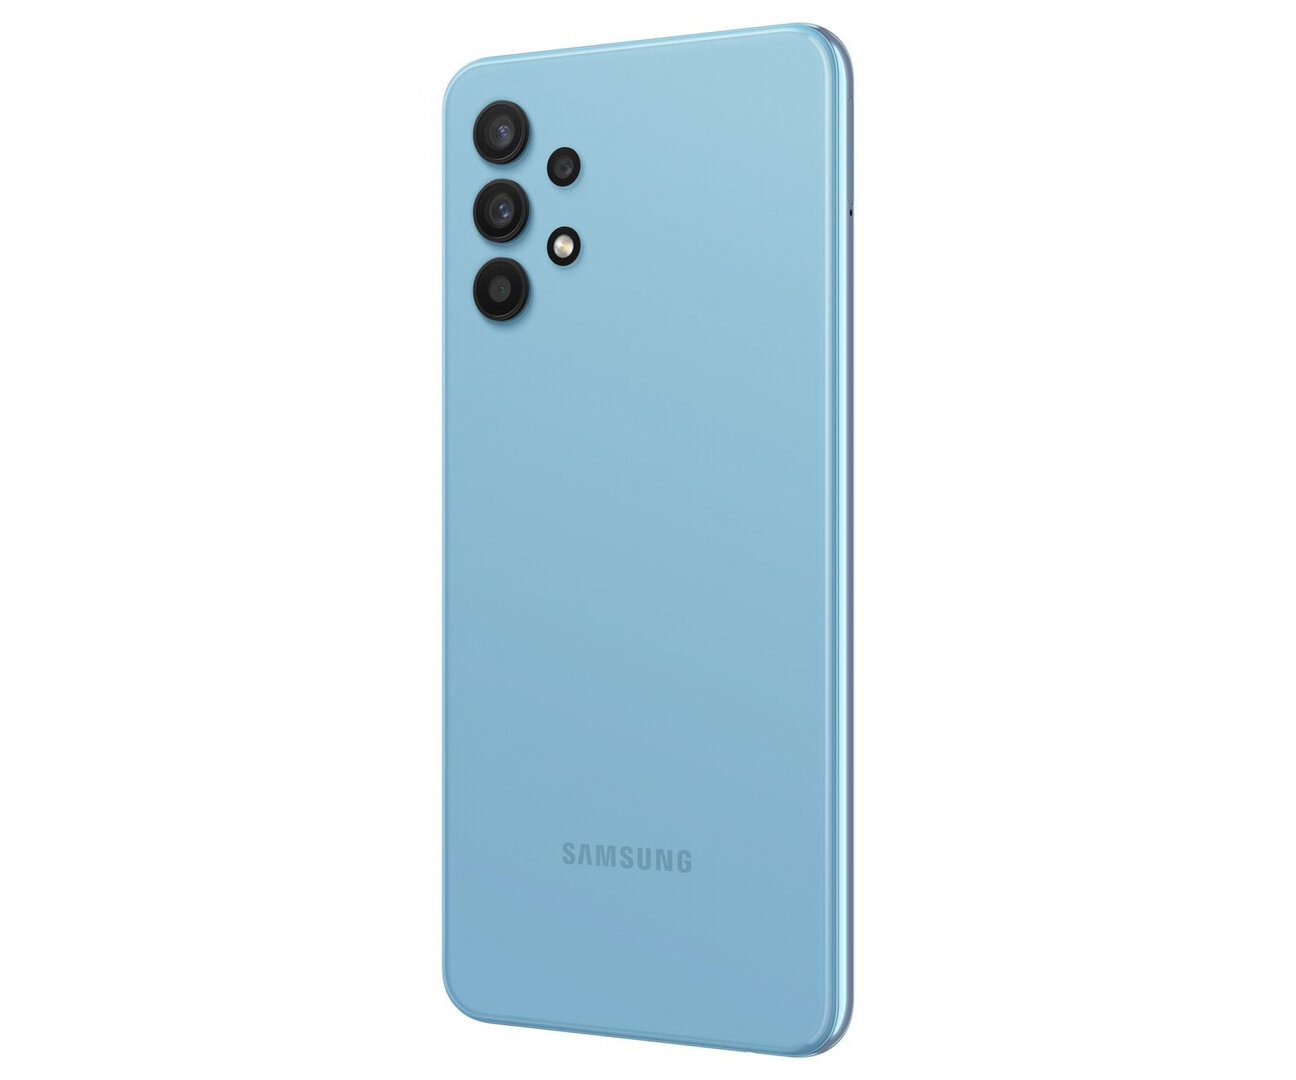 Smartfon Samsung Galaxy A32 LTE (A325 4/128GB)